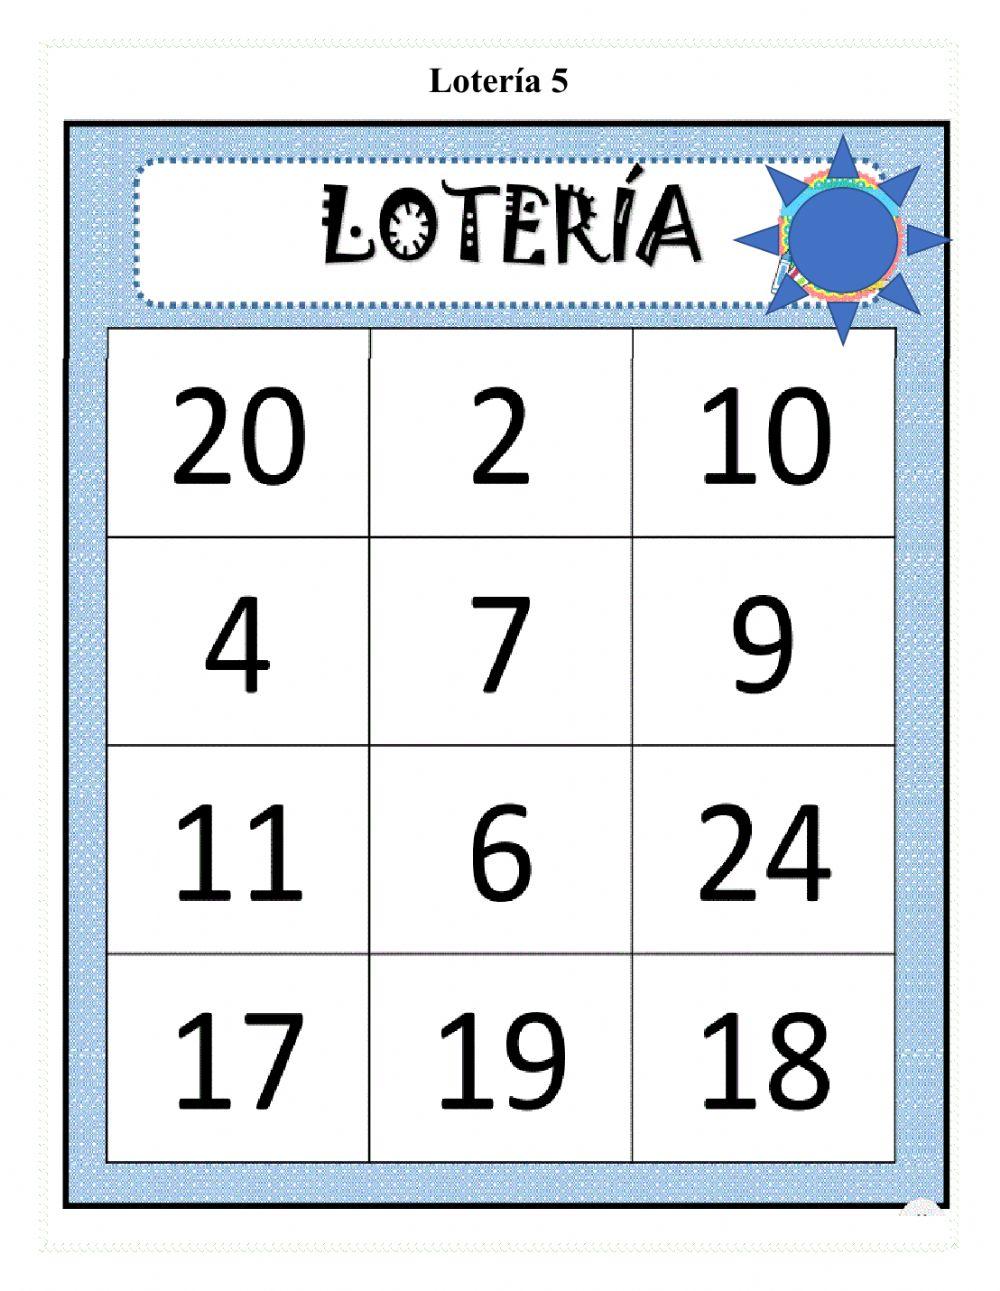 Lotería 6